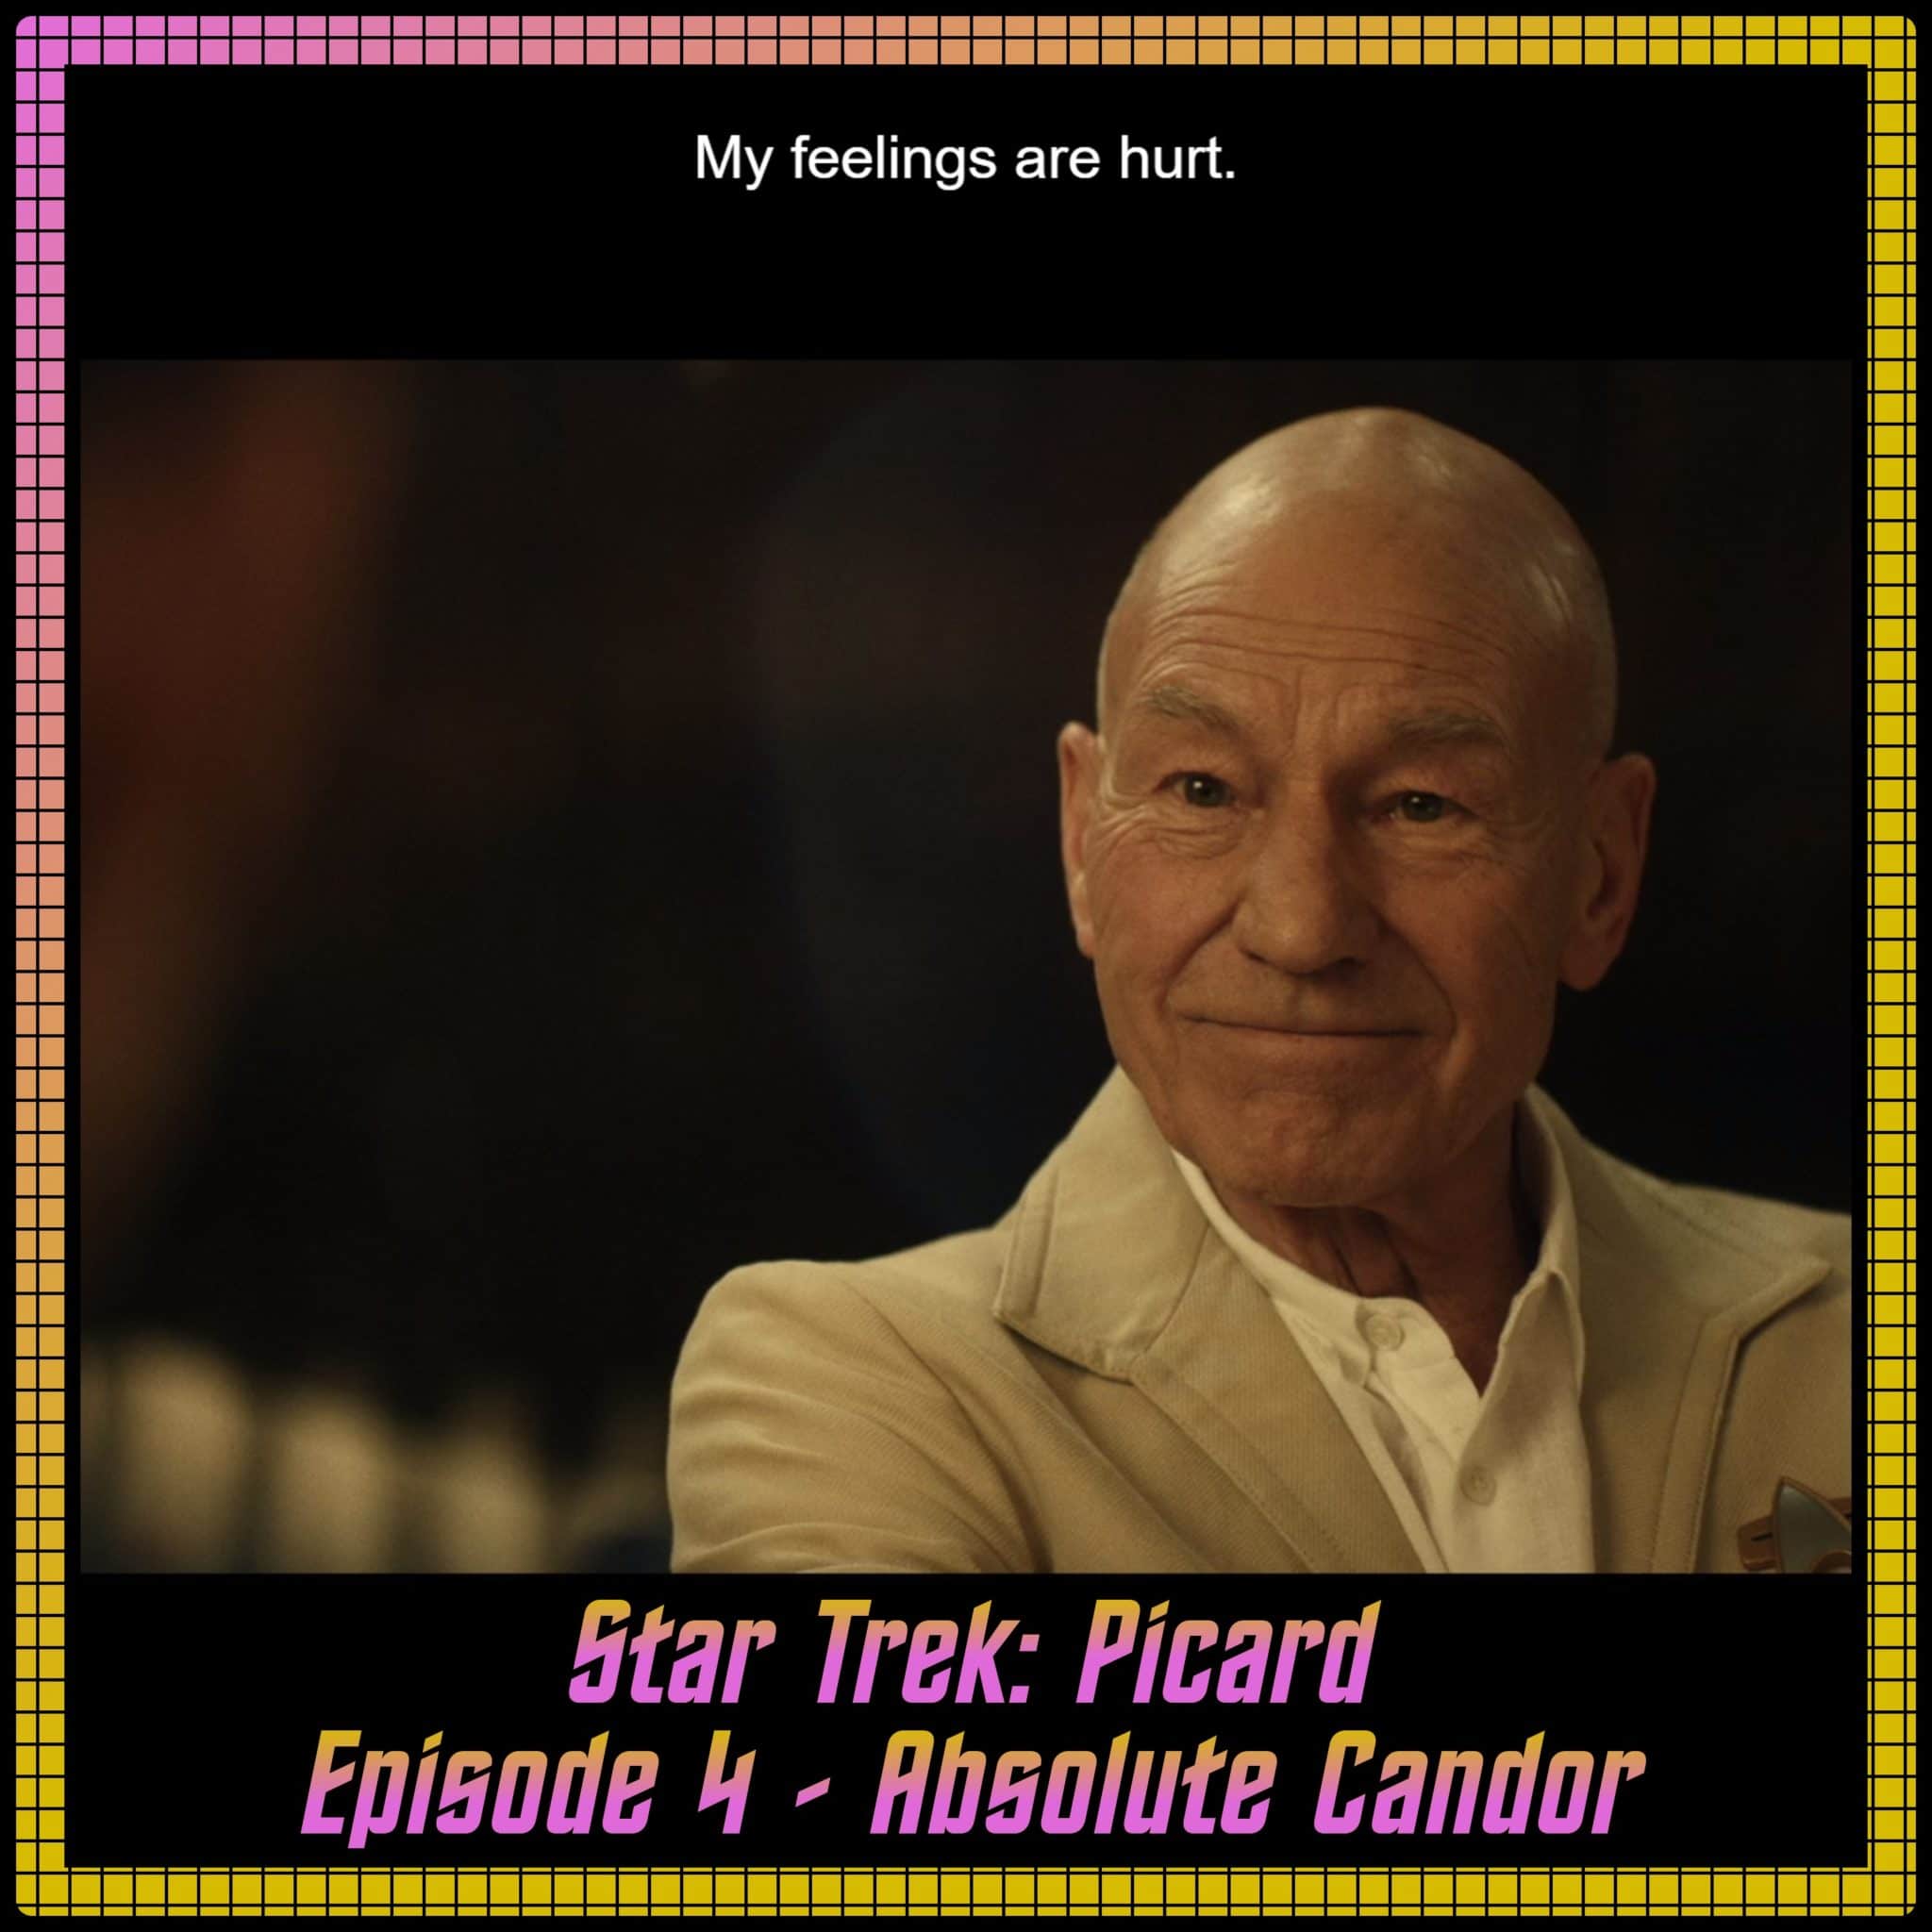 Star Trek: Picard Episode 4 - Absolute Candor - Recap